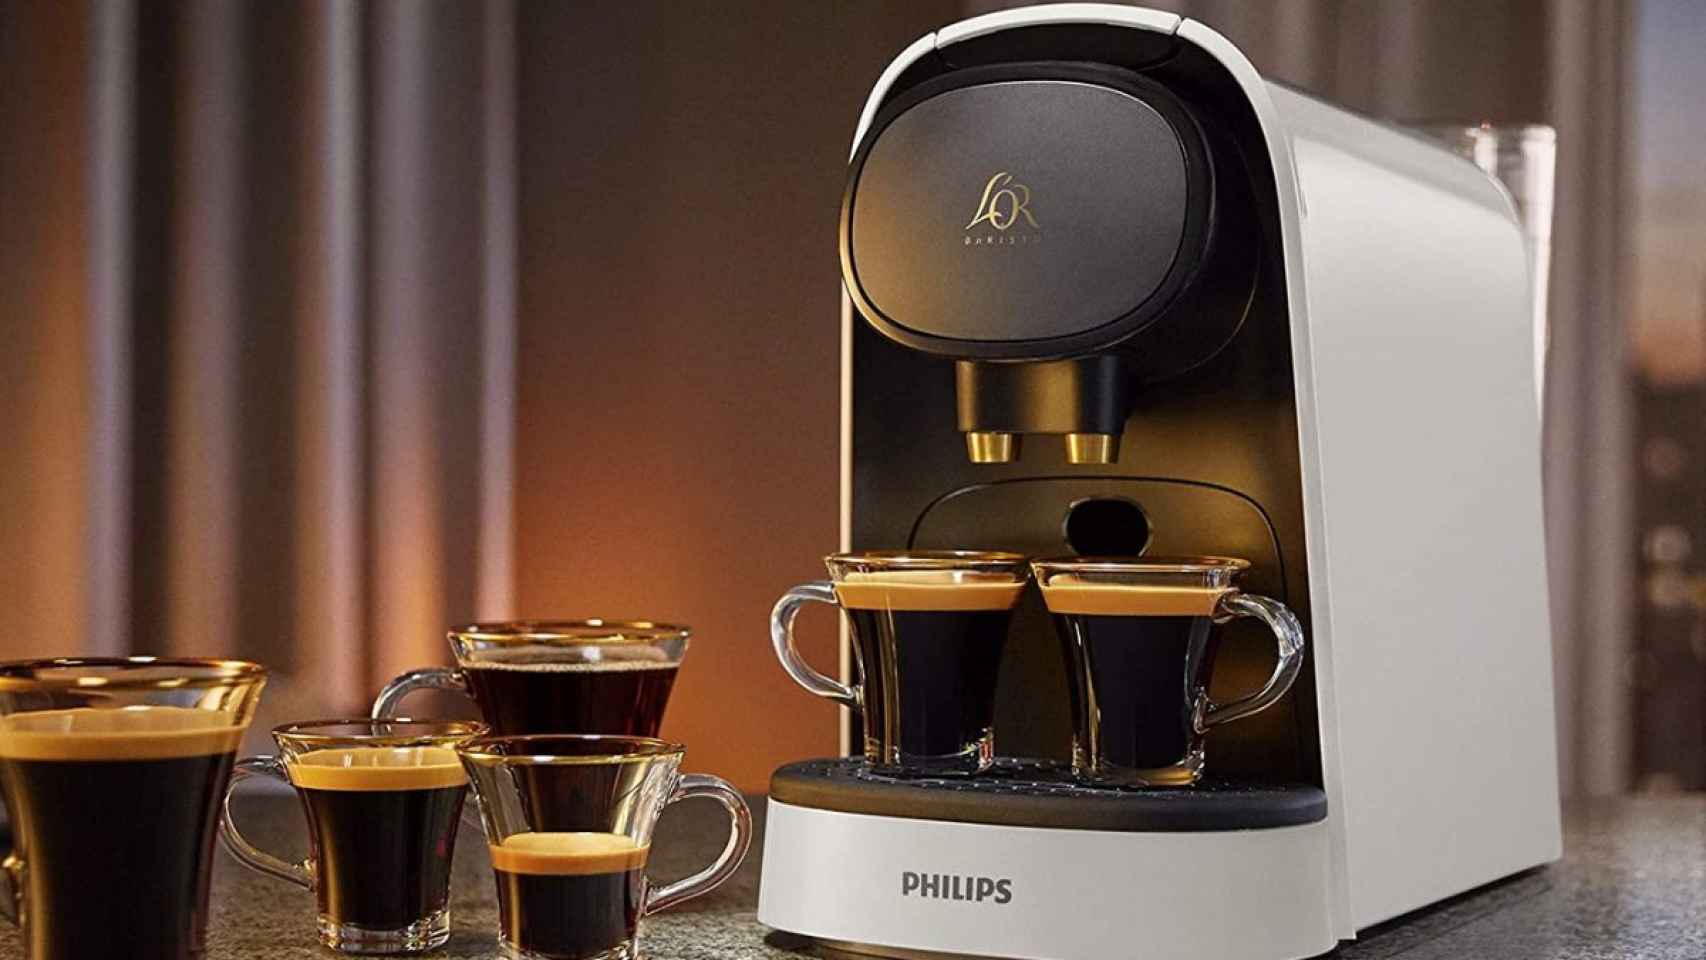 Prepara dos cafés al mismo tiempo con esta cafetera Philips al 44